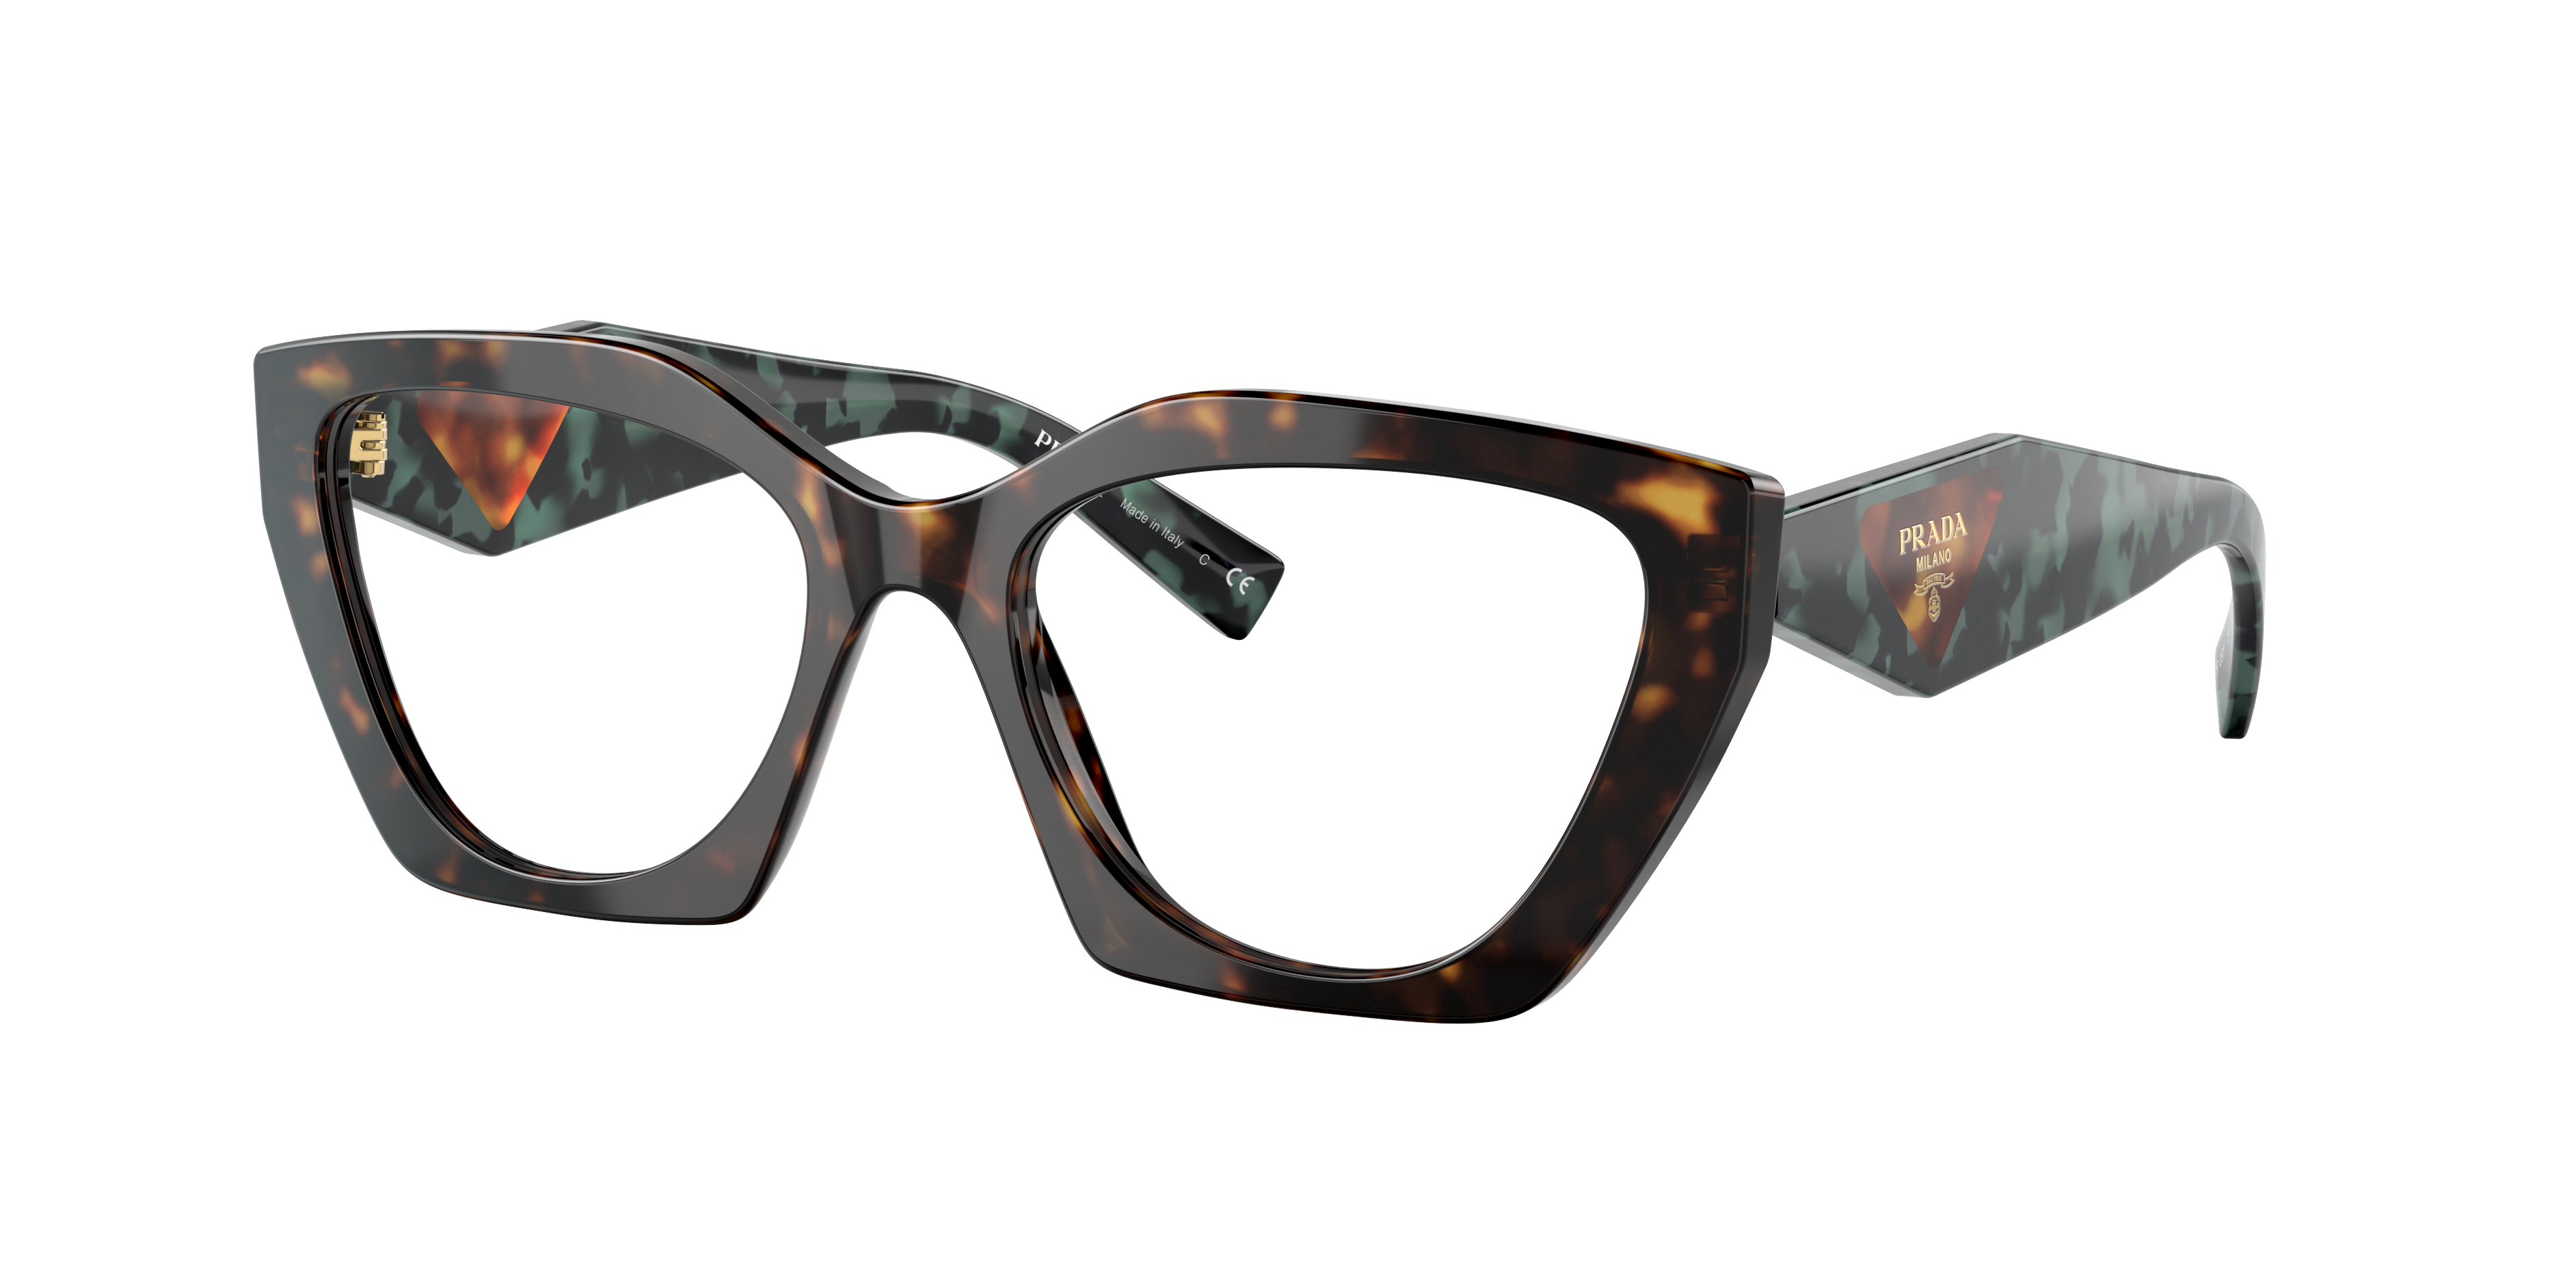 Actualizar 65+ imagen lenscrafters prada eyeglasses